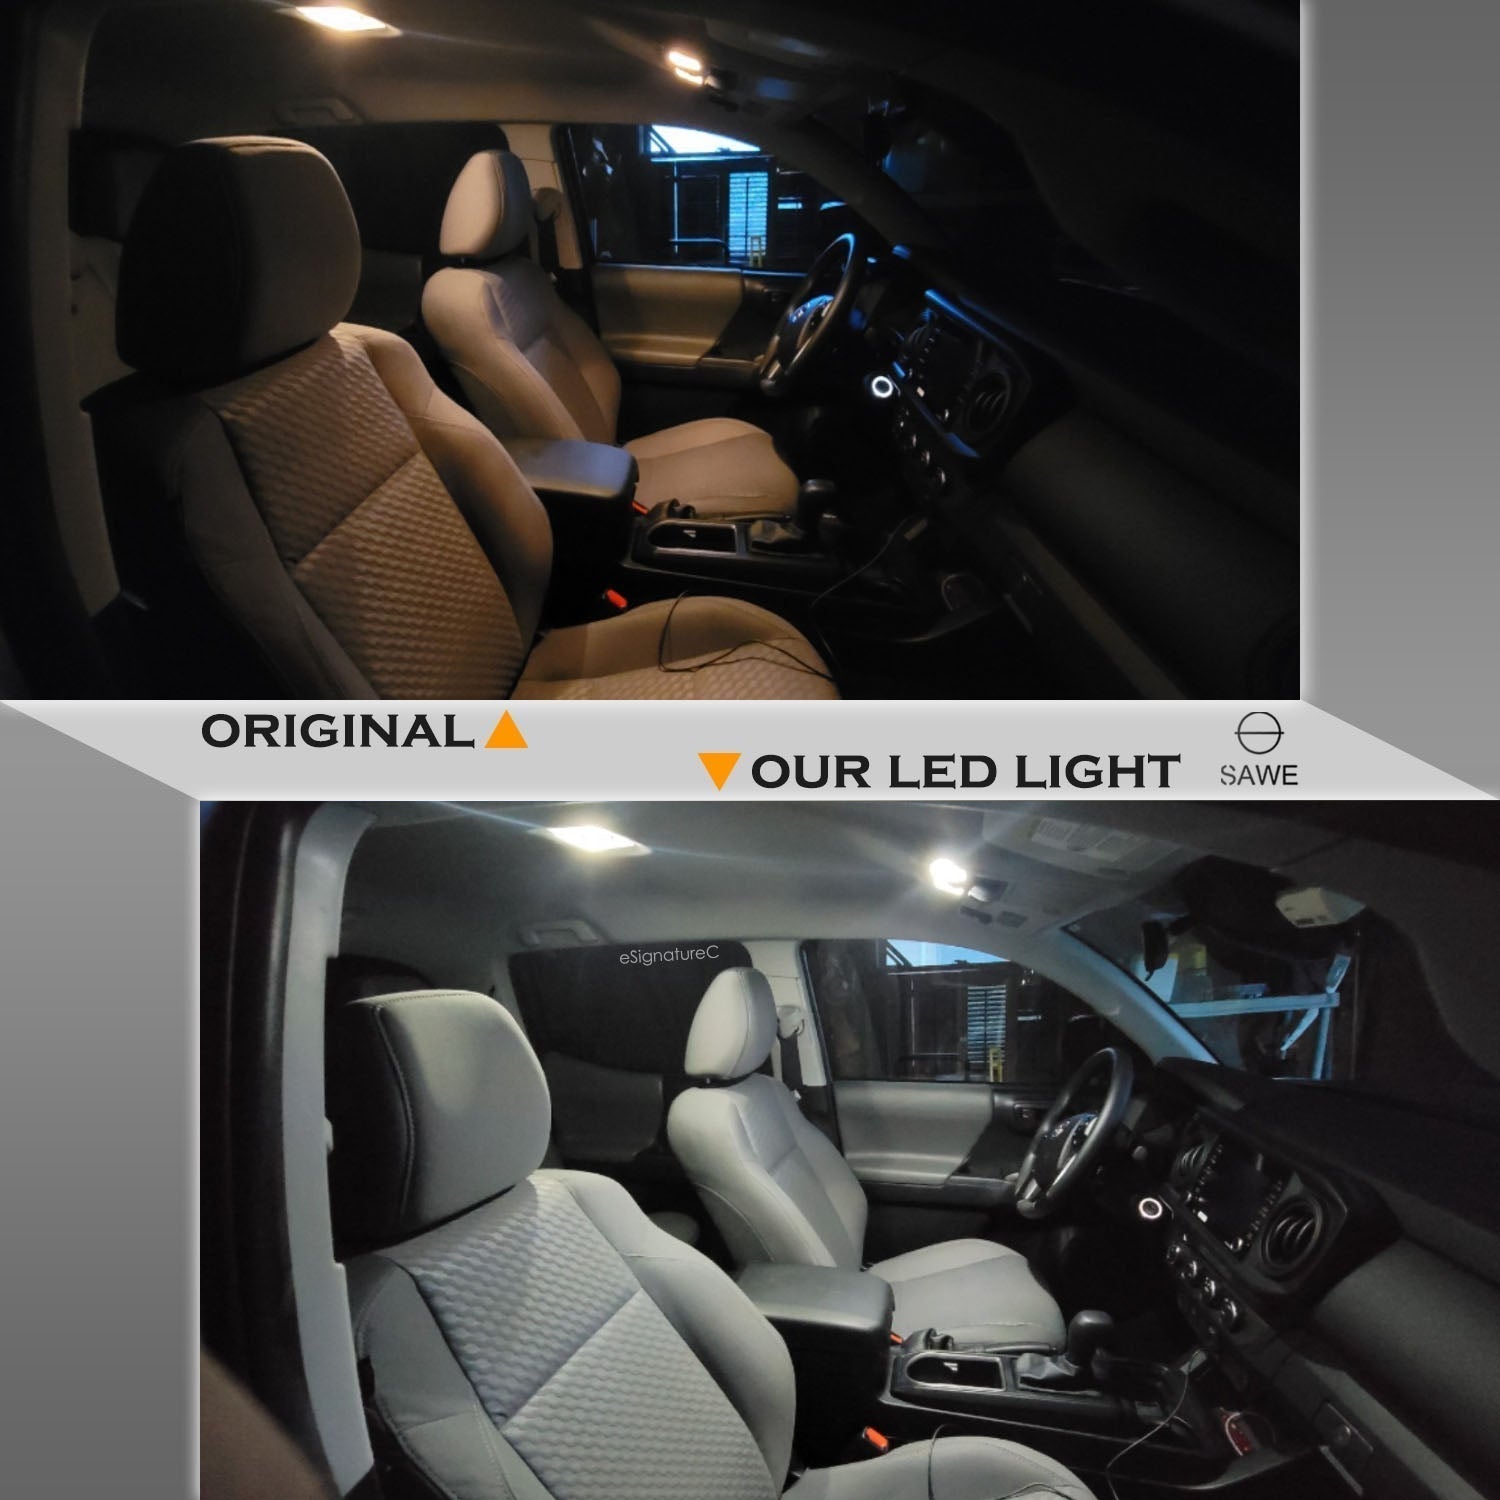 For Volkswagen Jetta Interior LED Lights - Dome & Map Light Bulbs Package Kit for 2005 - 2010 - White